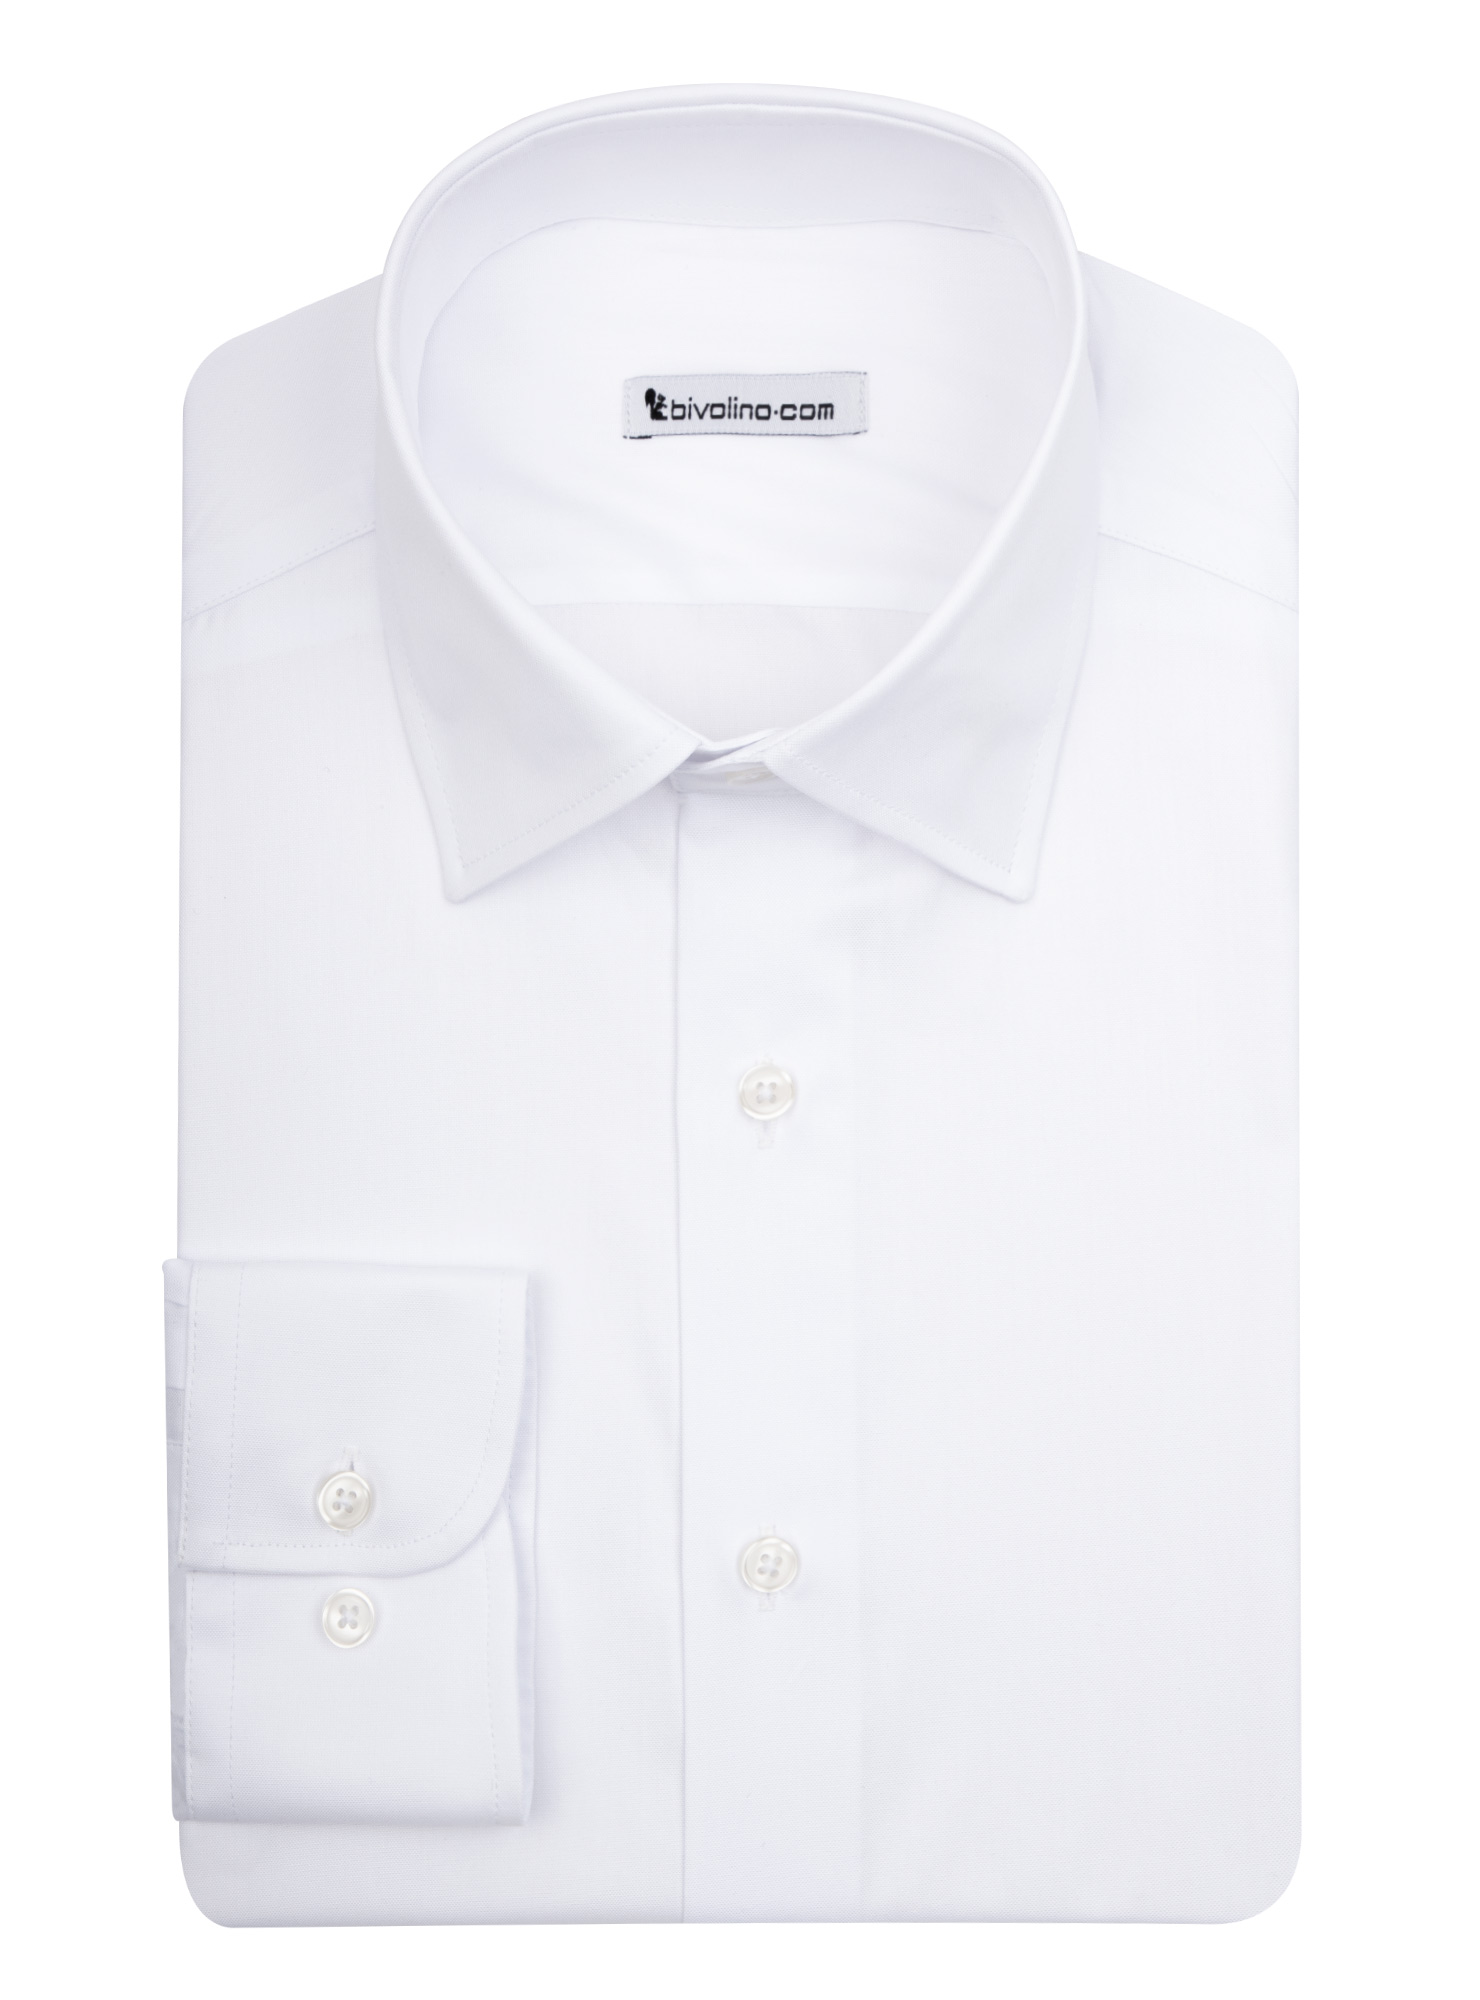 TURIN -  White PinPoint  shirt - KIWI 1